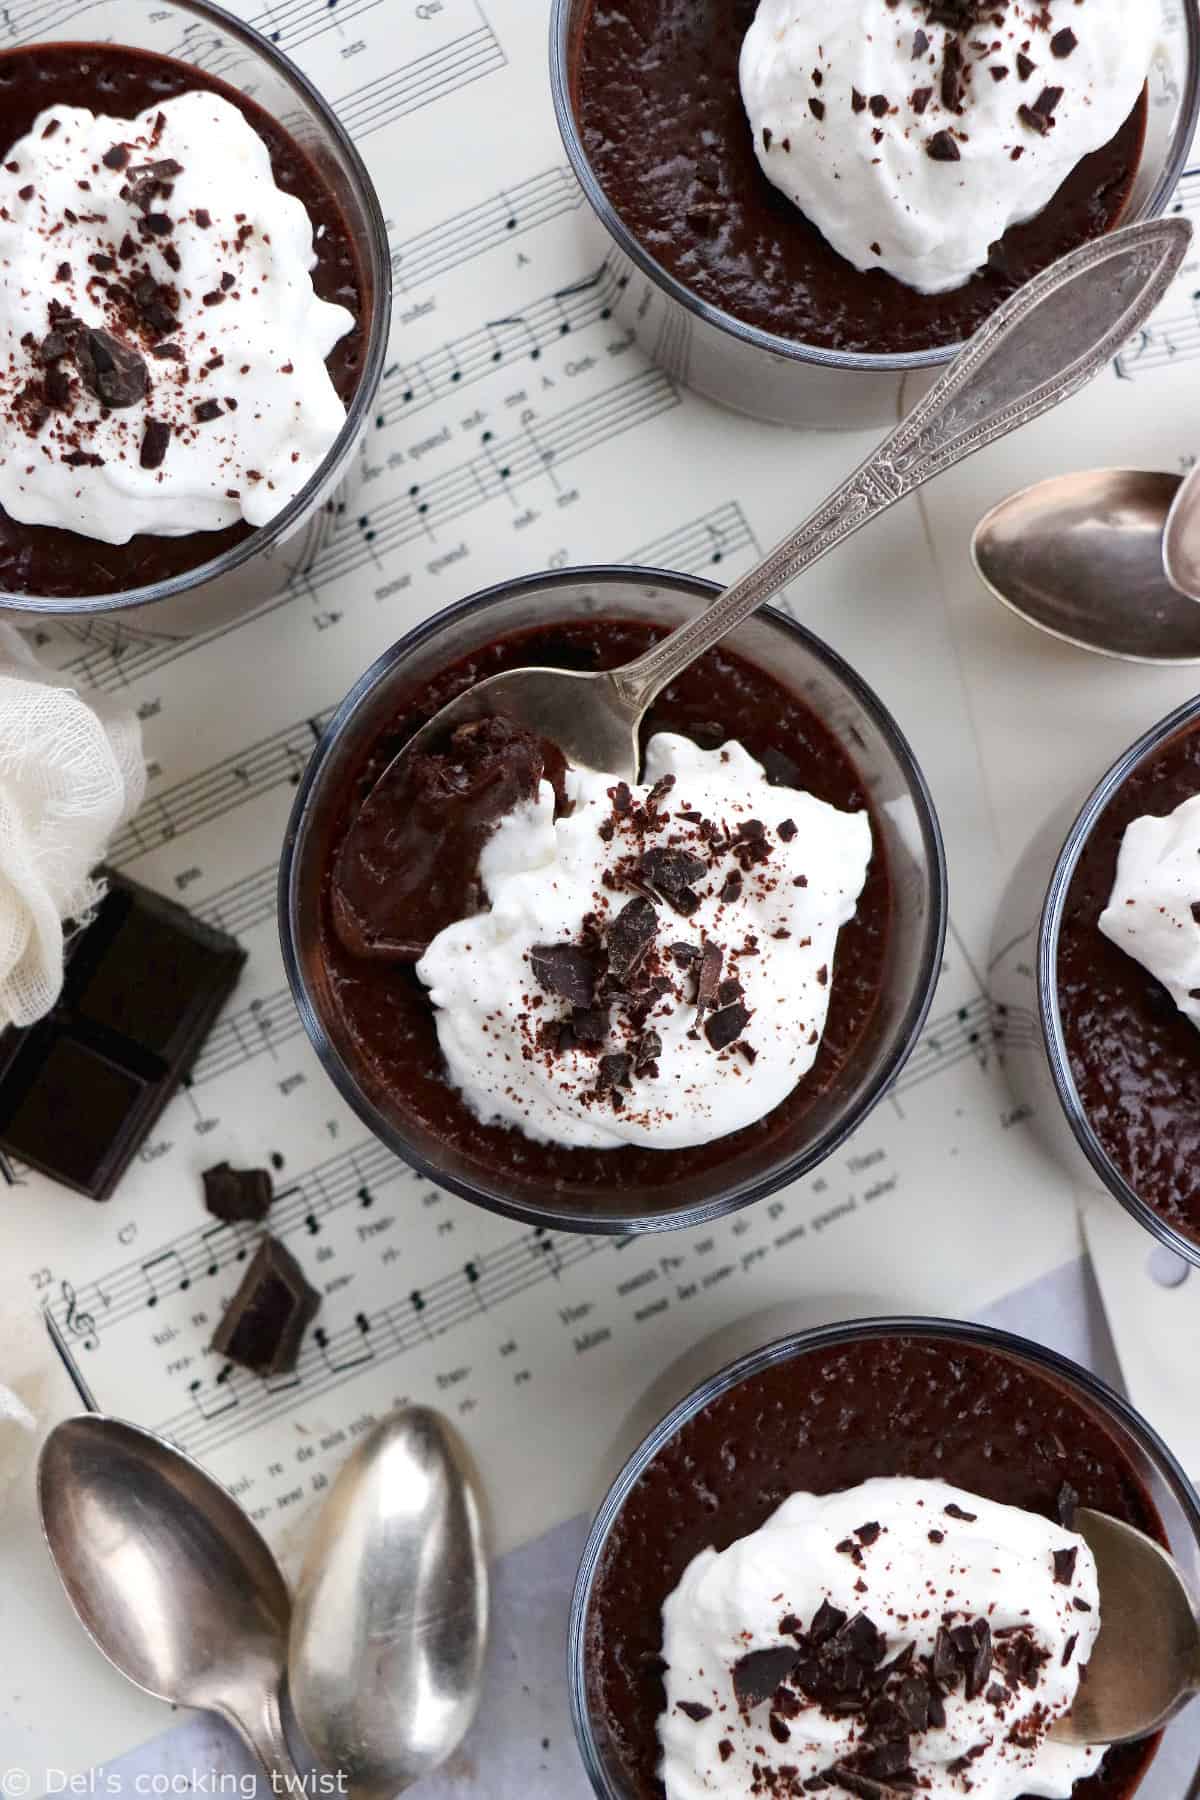 Petits pots de crème au chocolat à l'ancienne - Del's cooking twist